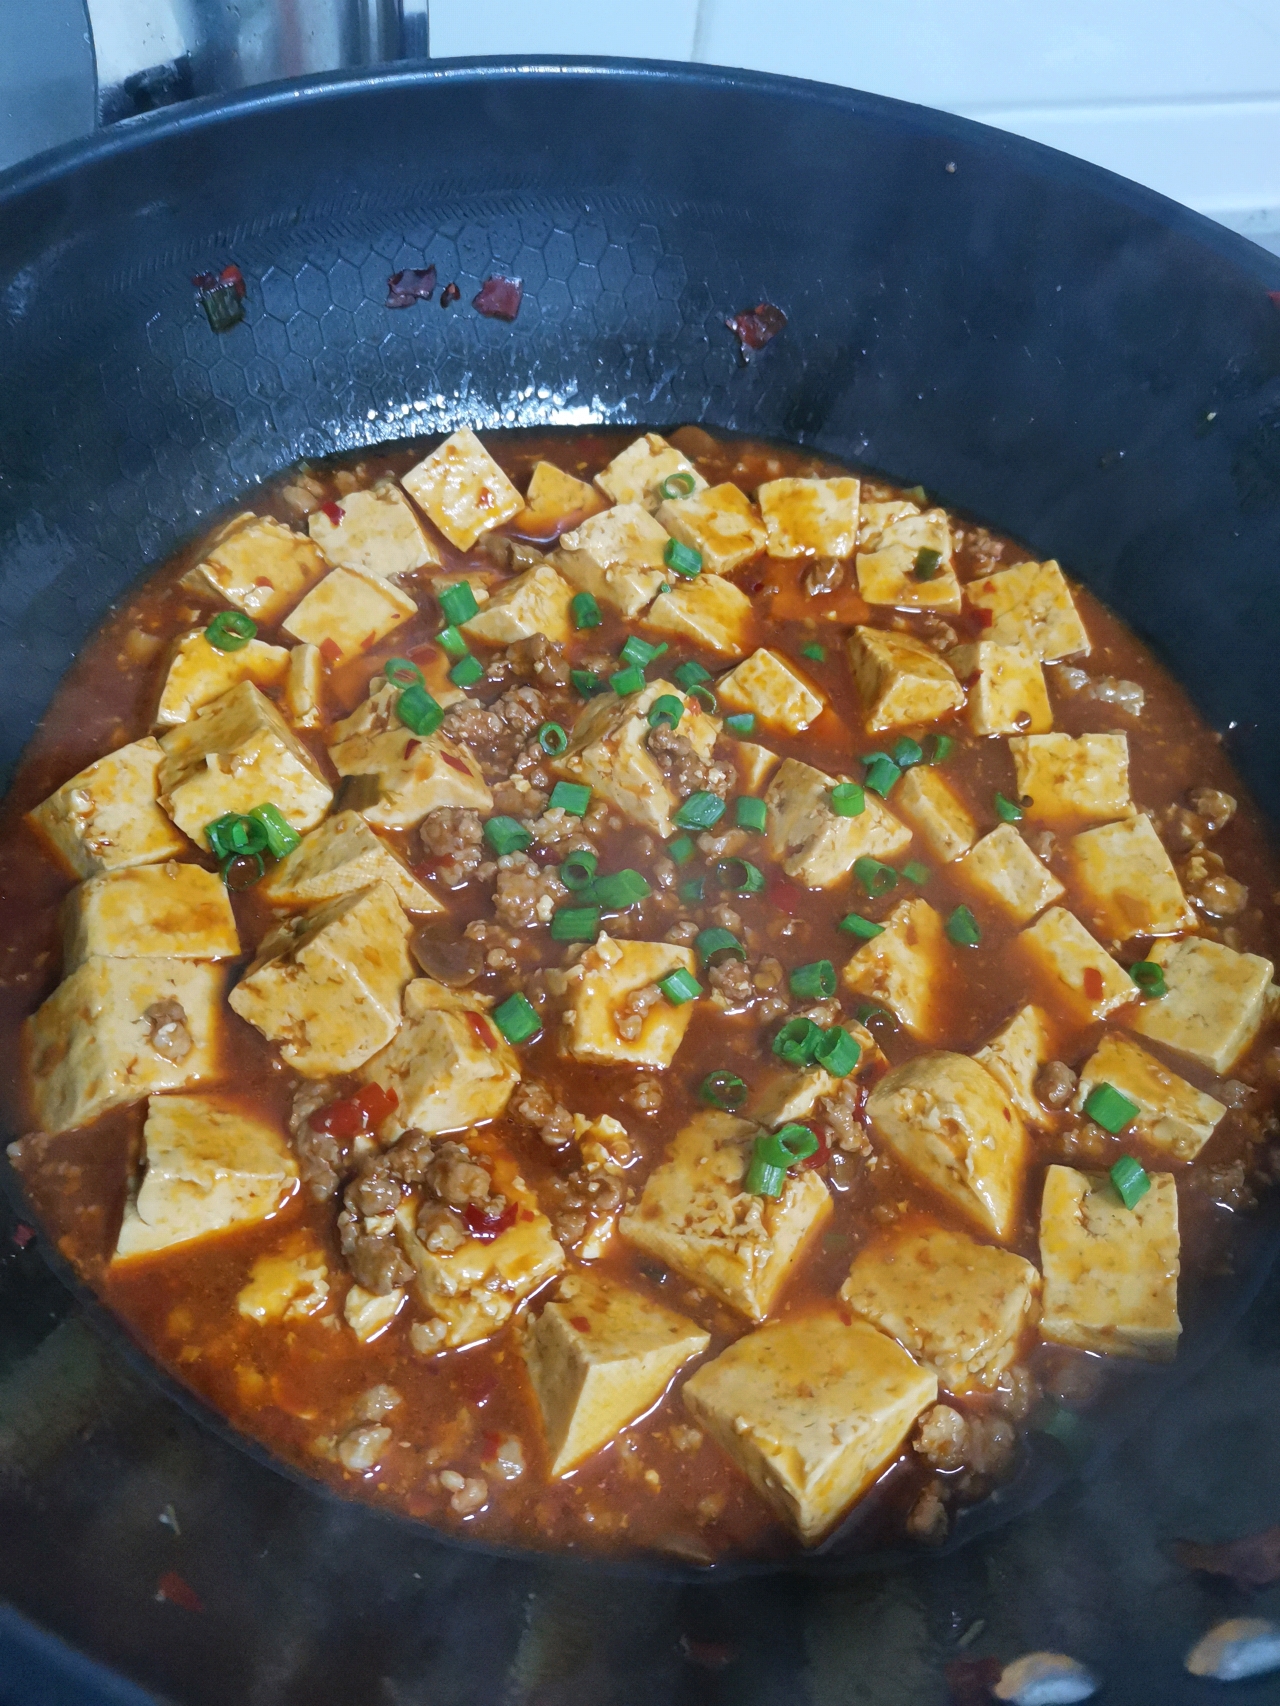 家常菜-肉末豆腐